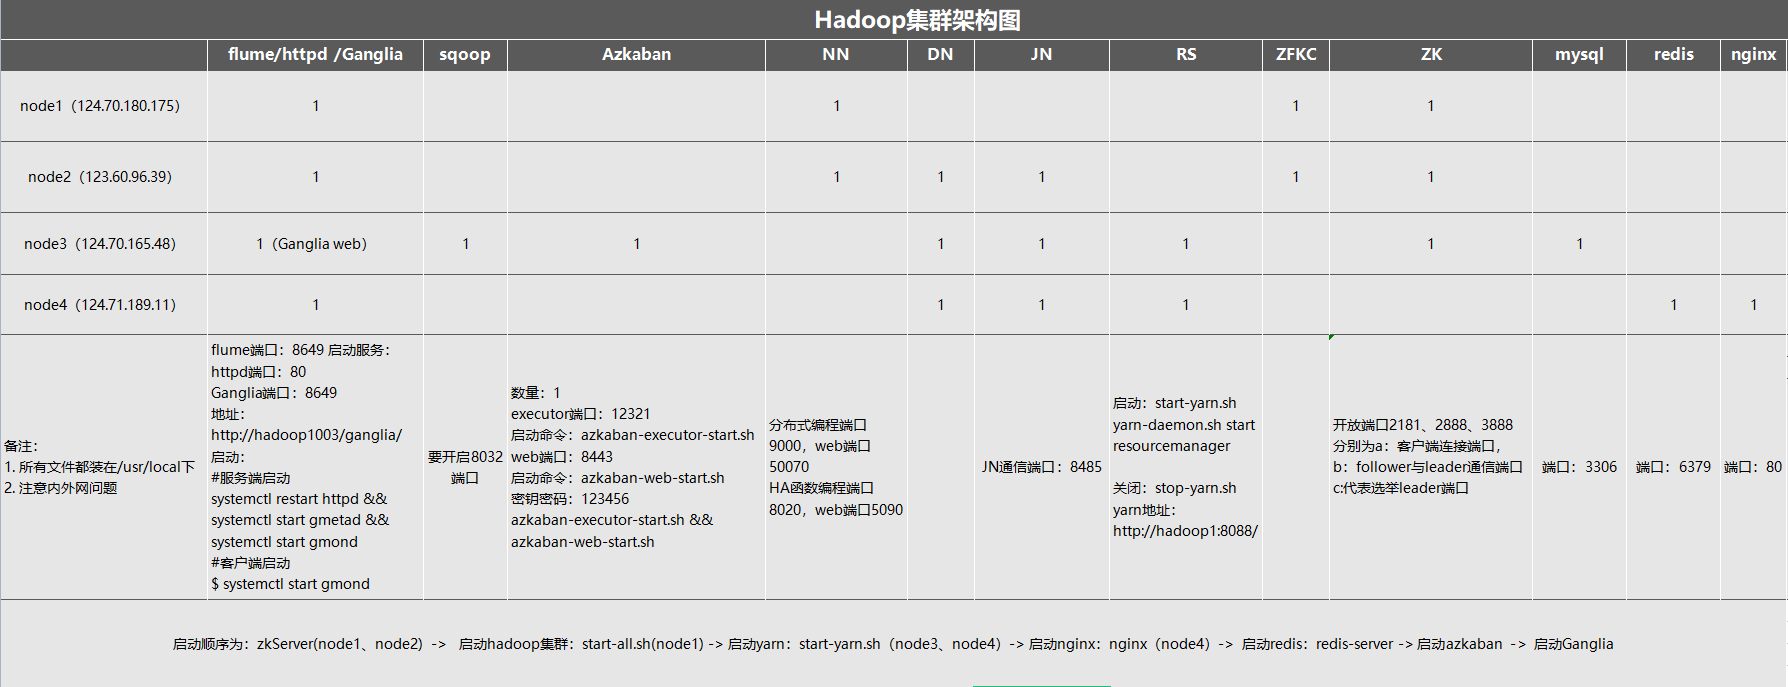 Hadoop完全分布式安装（HA、Yarn、ZKFC、flumeGanglia、sqoop一步到位）